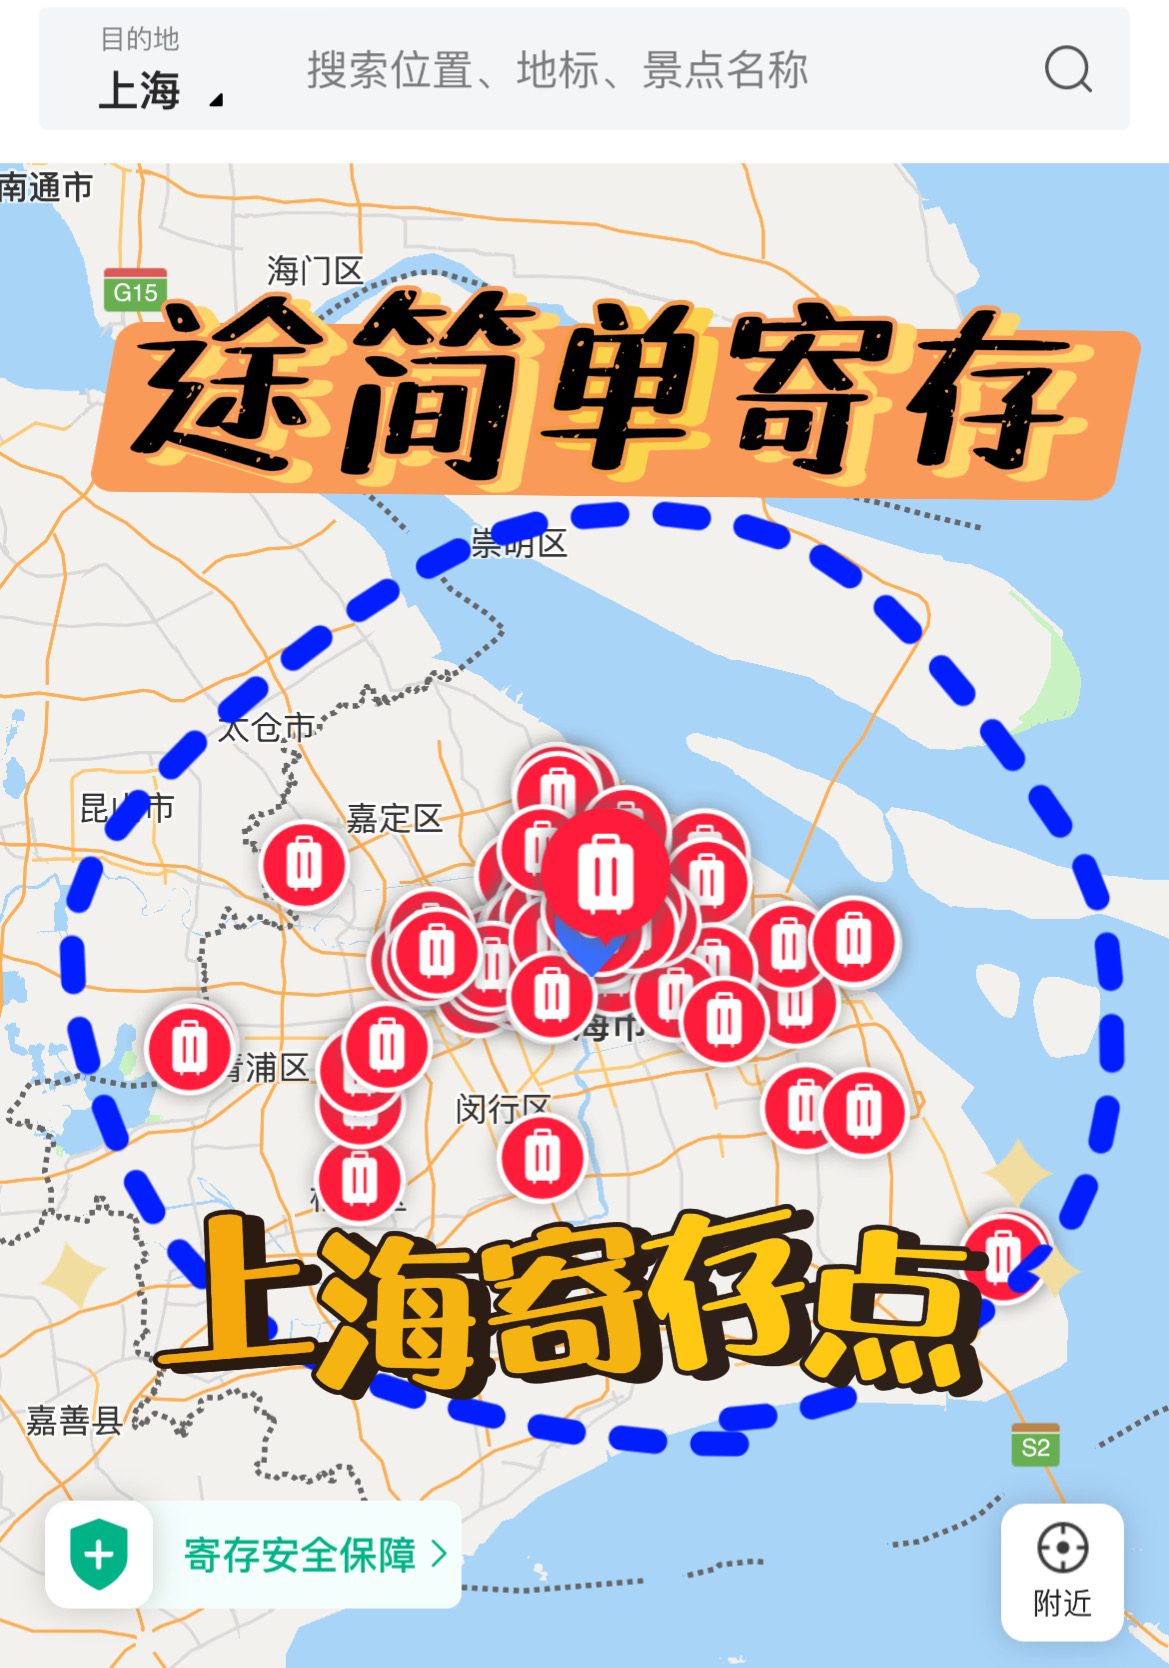 上海寄存行李的地方在哪里？寄存收费多少？